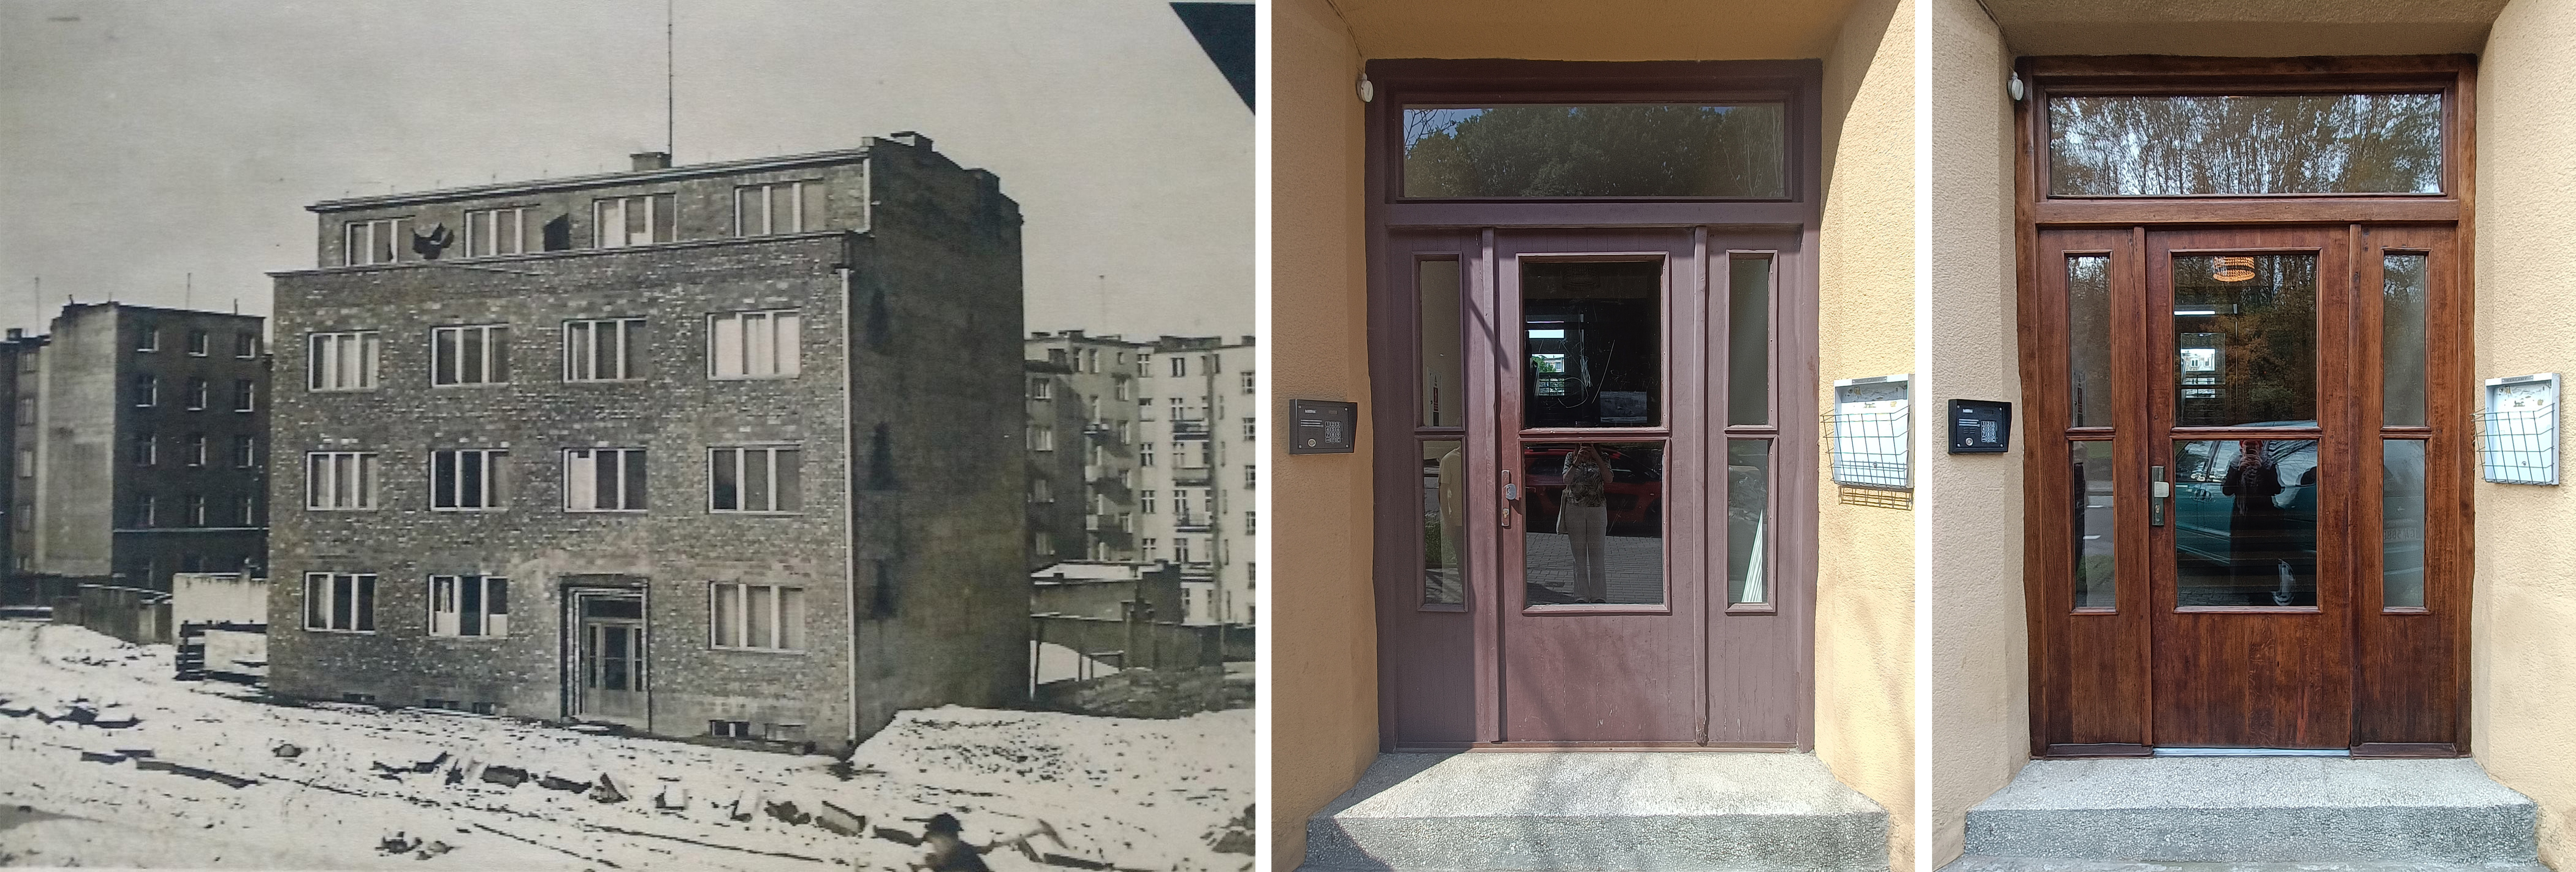 Historyczny budynek i drzwi przed i po renowacji